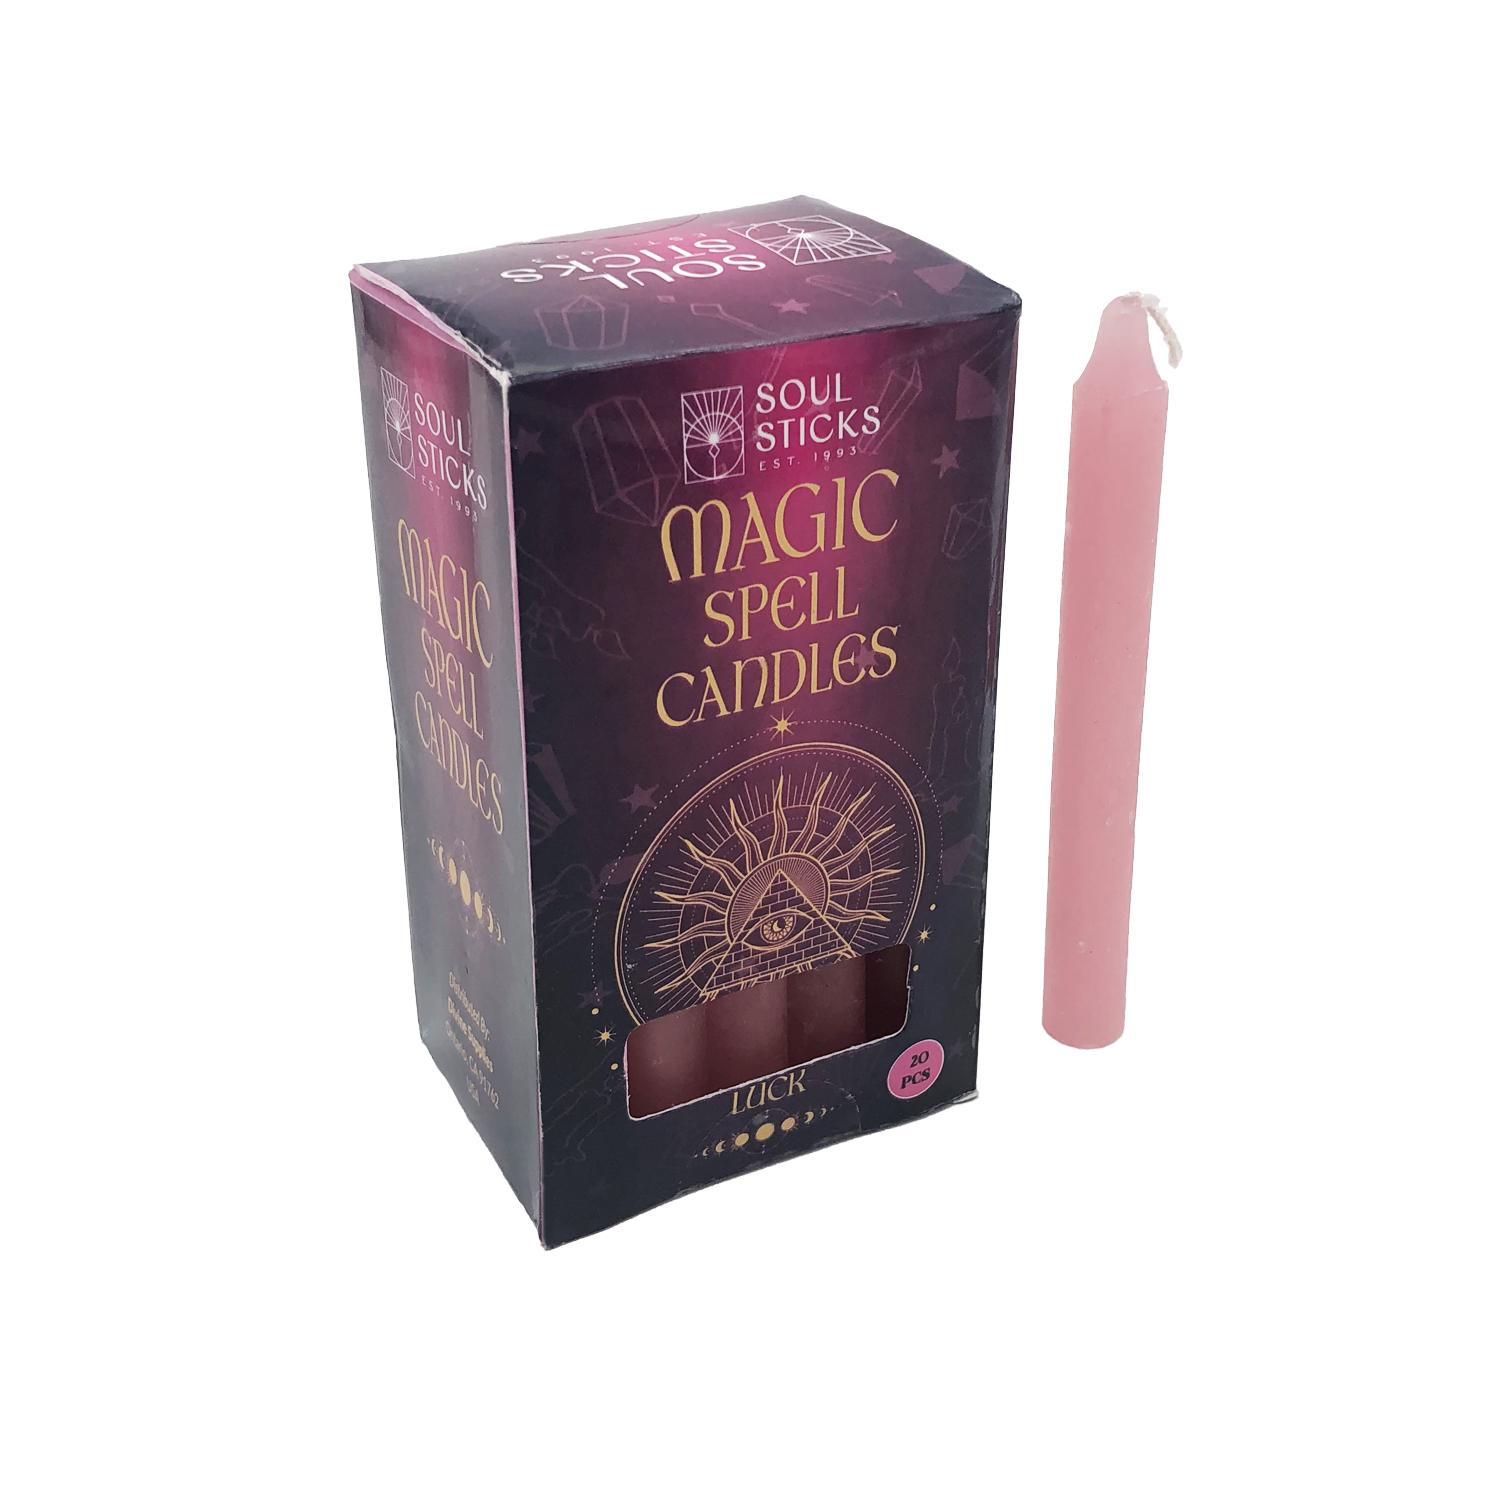 20件裝粉紅色印度魔法蠟燭(運氣LUCK) 2小時彩色蠟燭 錐形蠟燭 靈魂棒 AD-CANDLE-LUCK